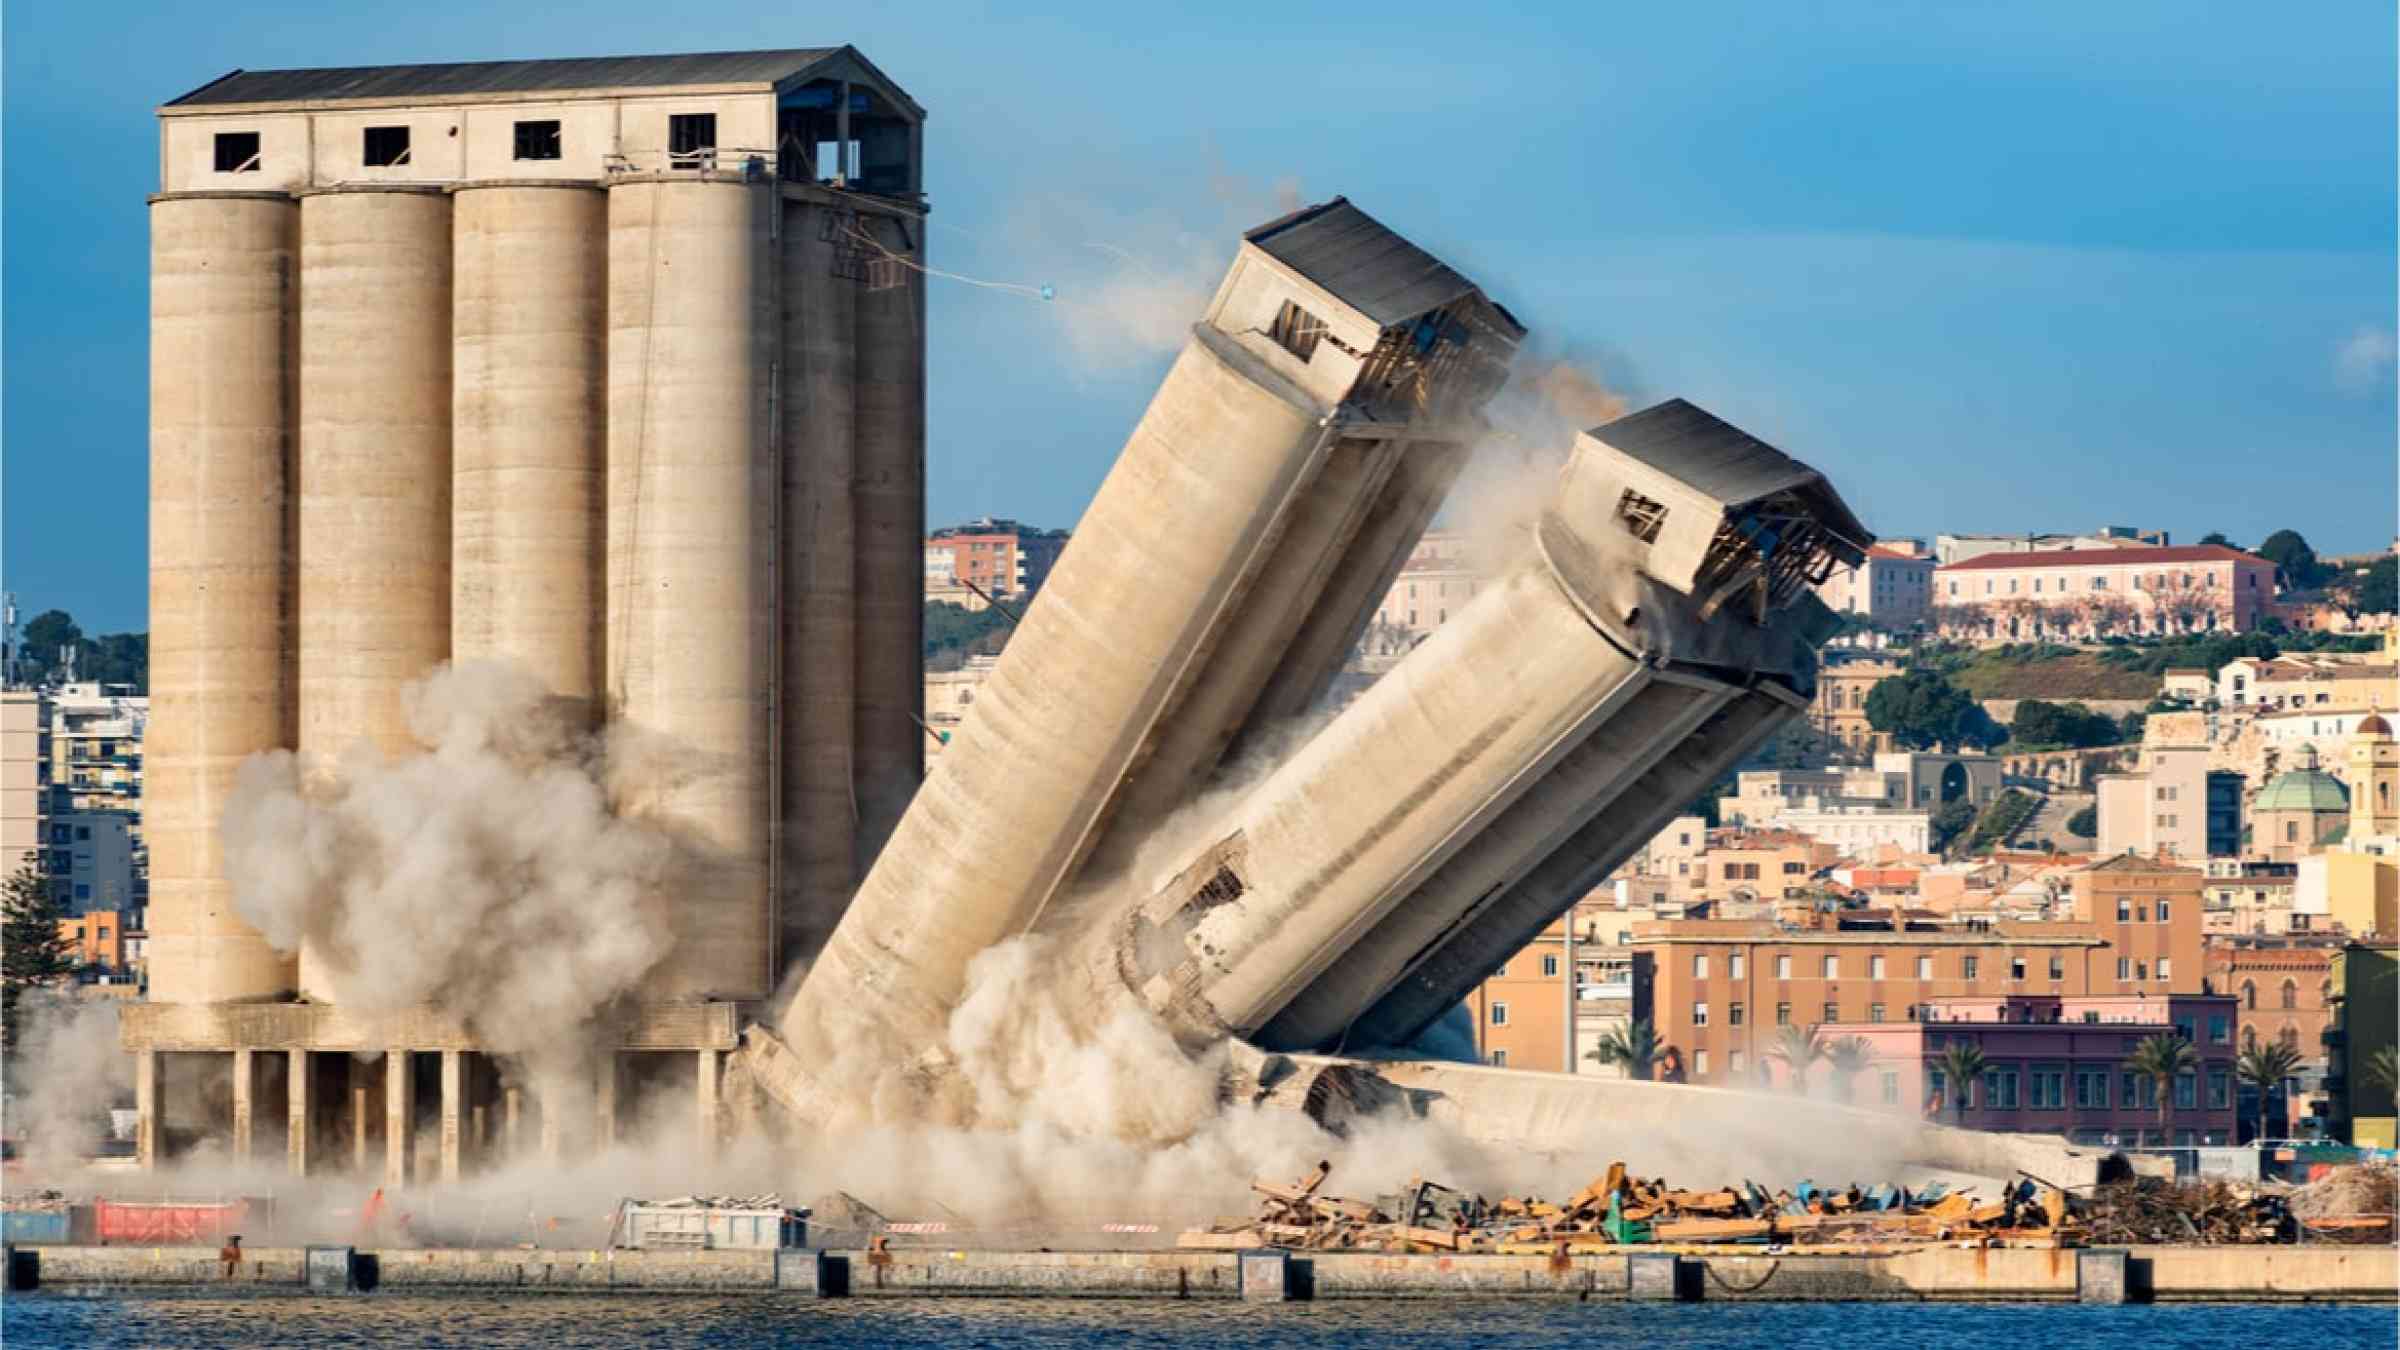 Demolition of silos.